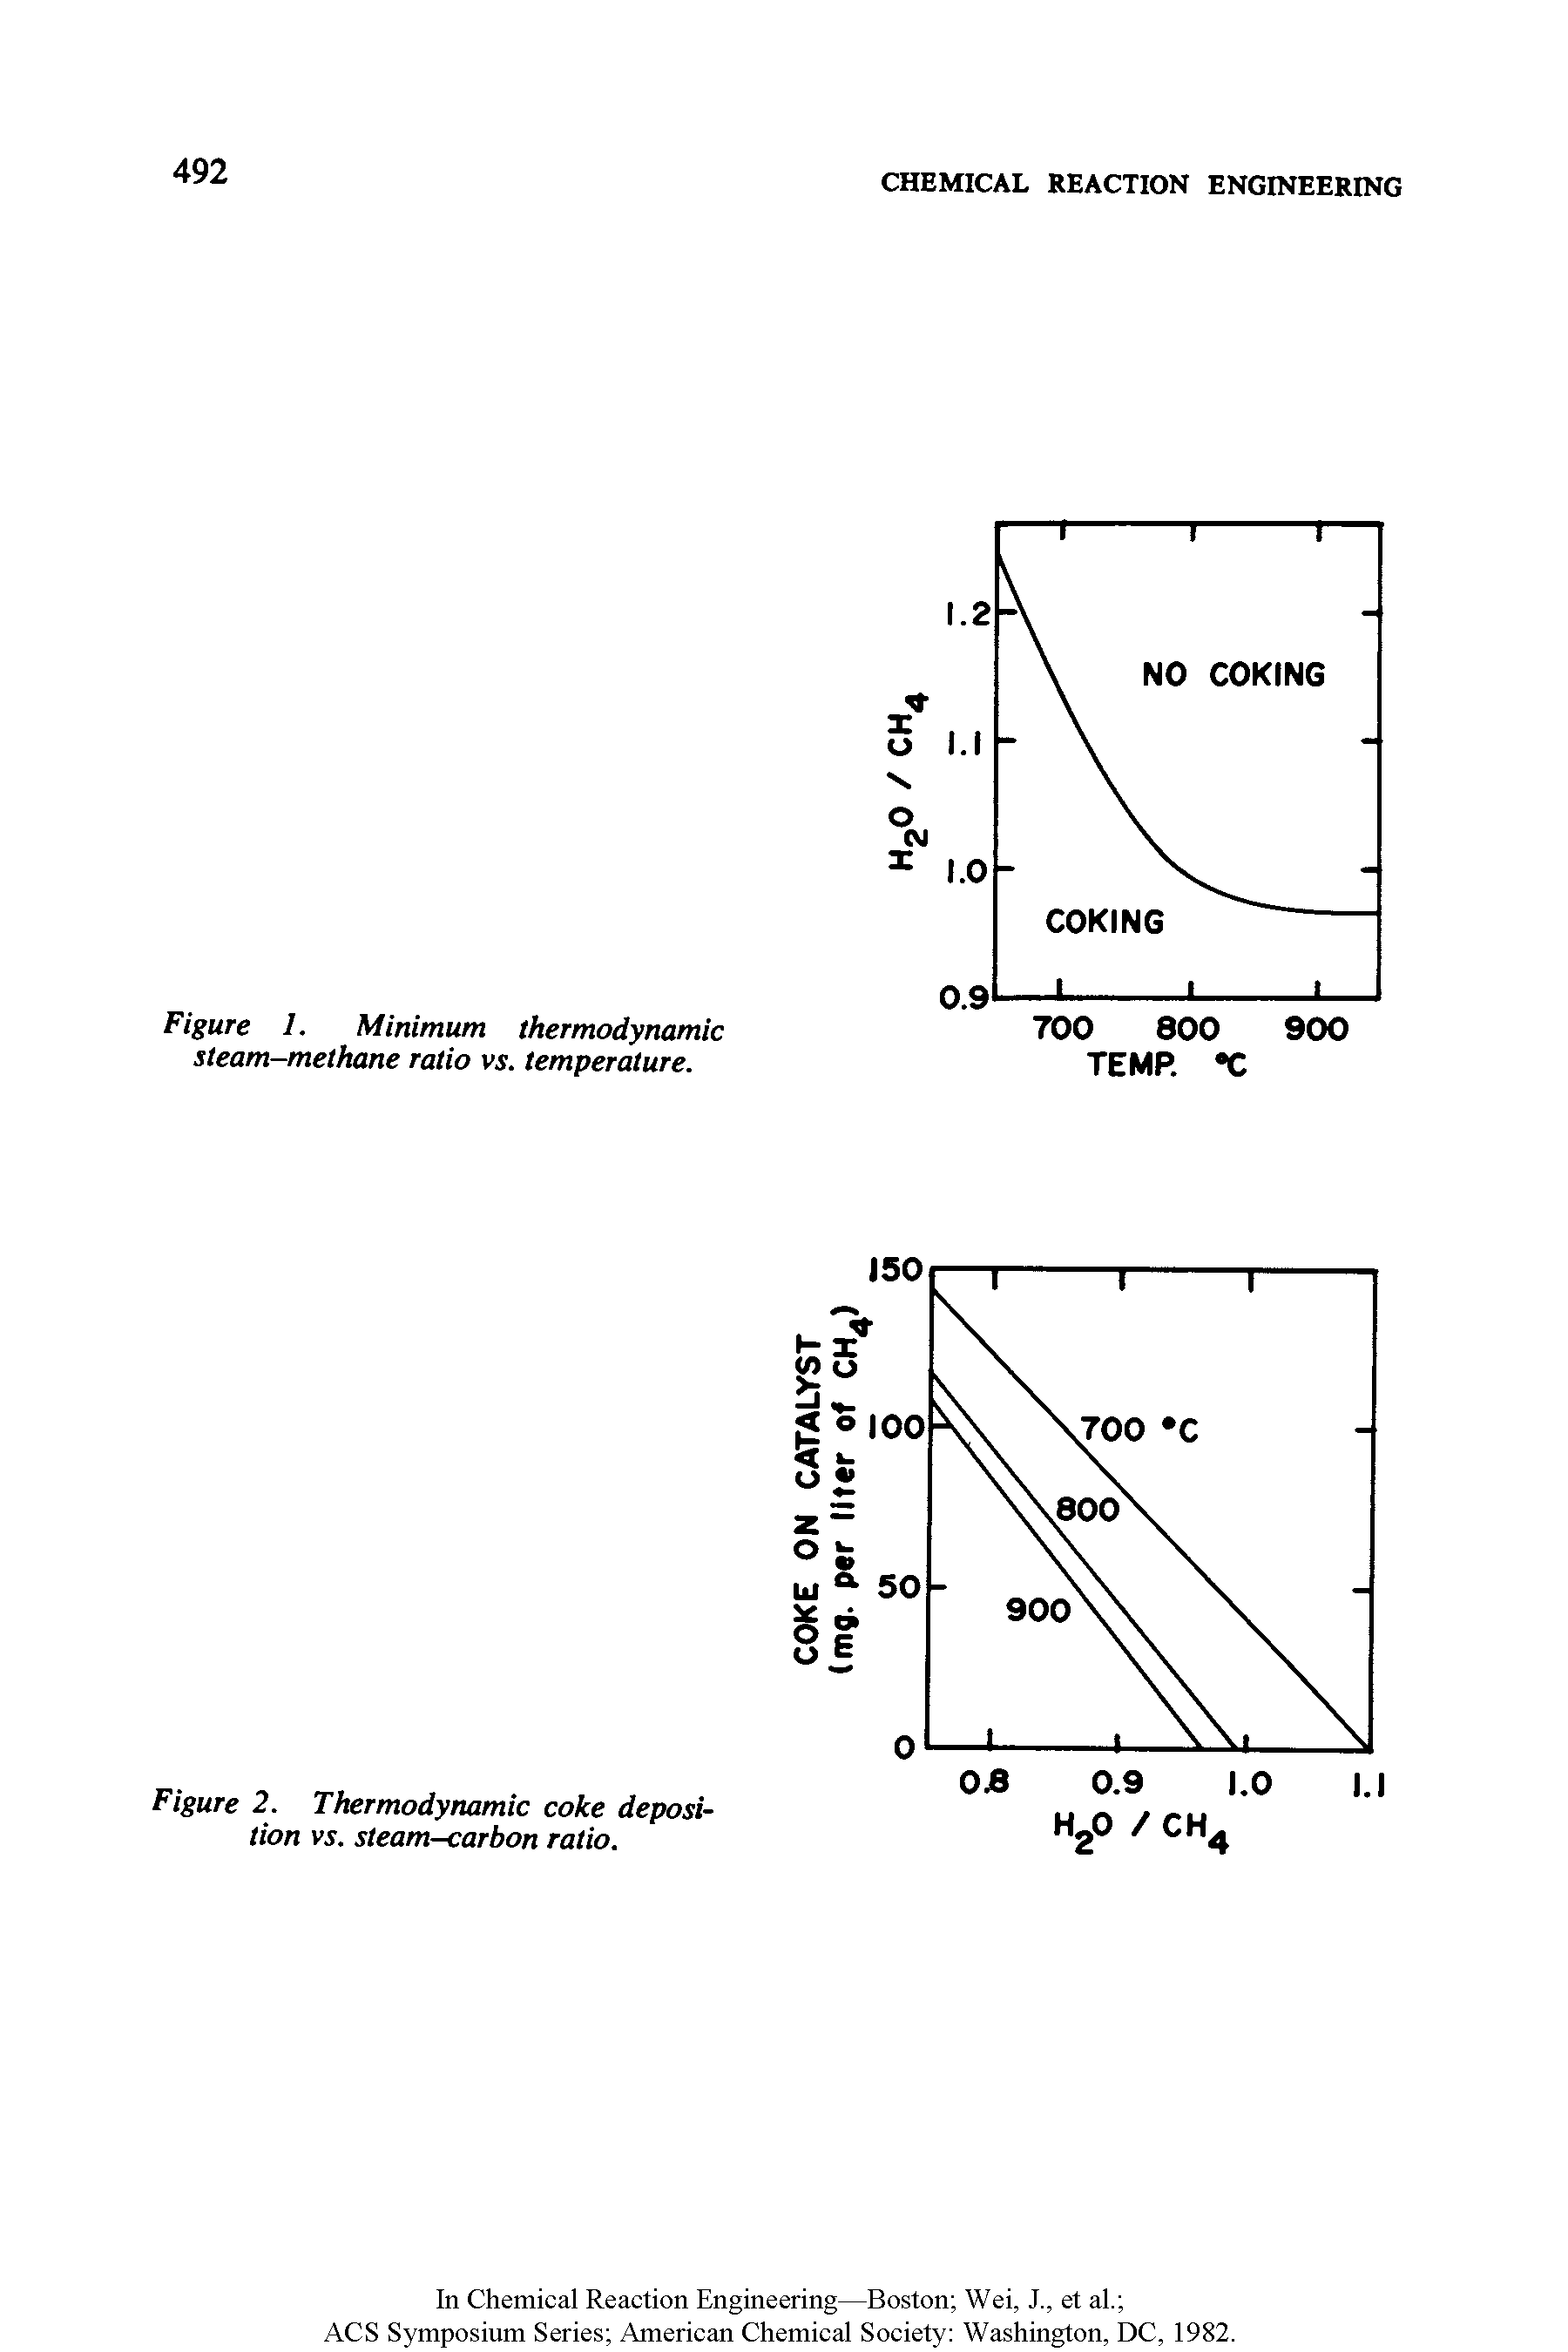 Figure 1. Minimum thermodynamic steam-methane ratio vs. temperature.